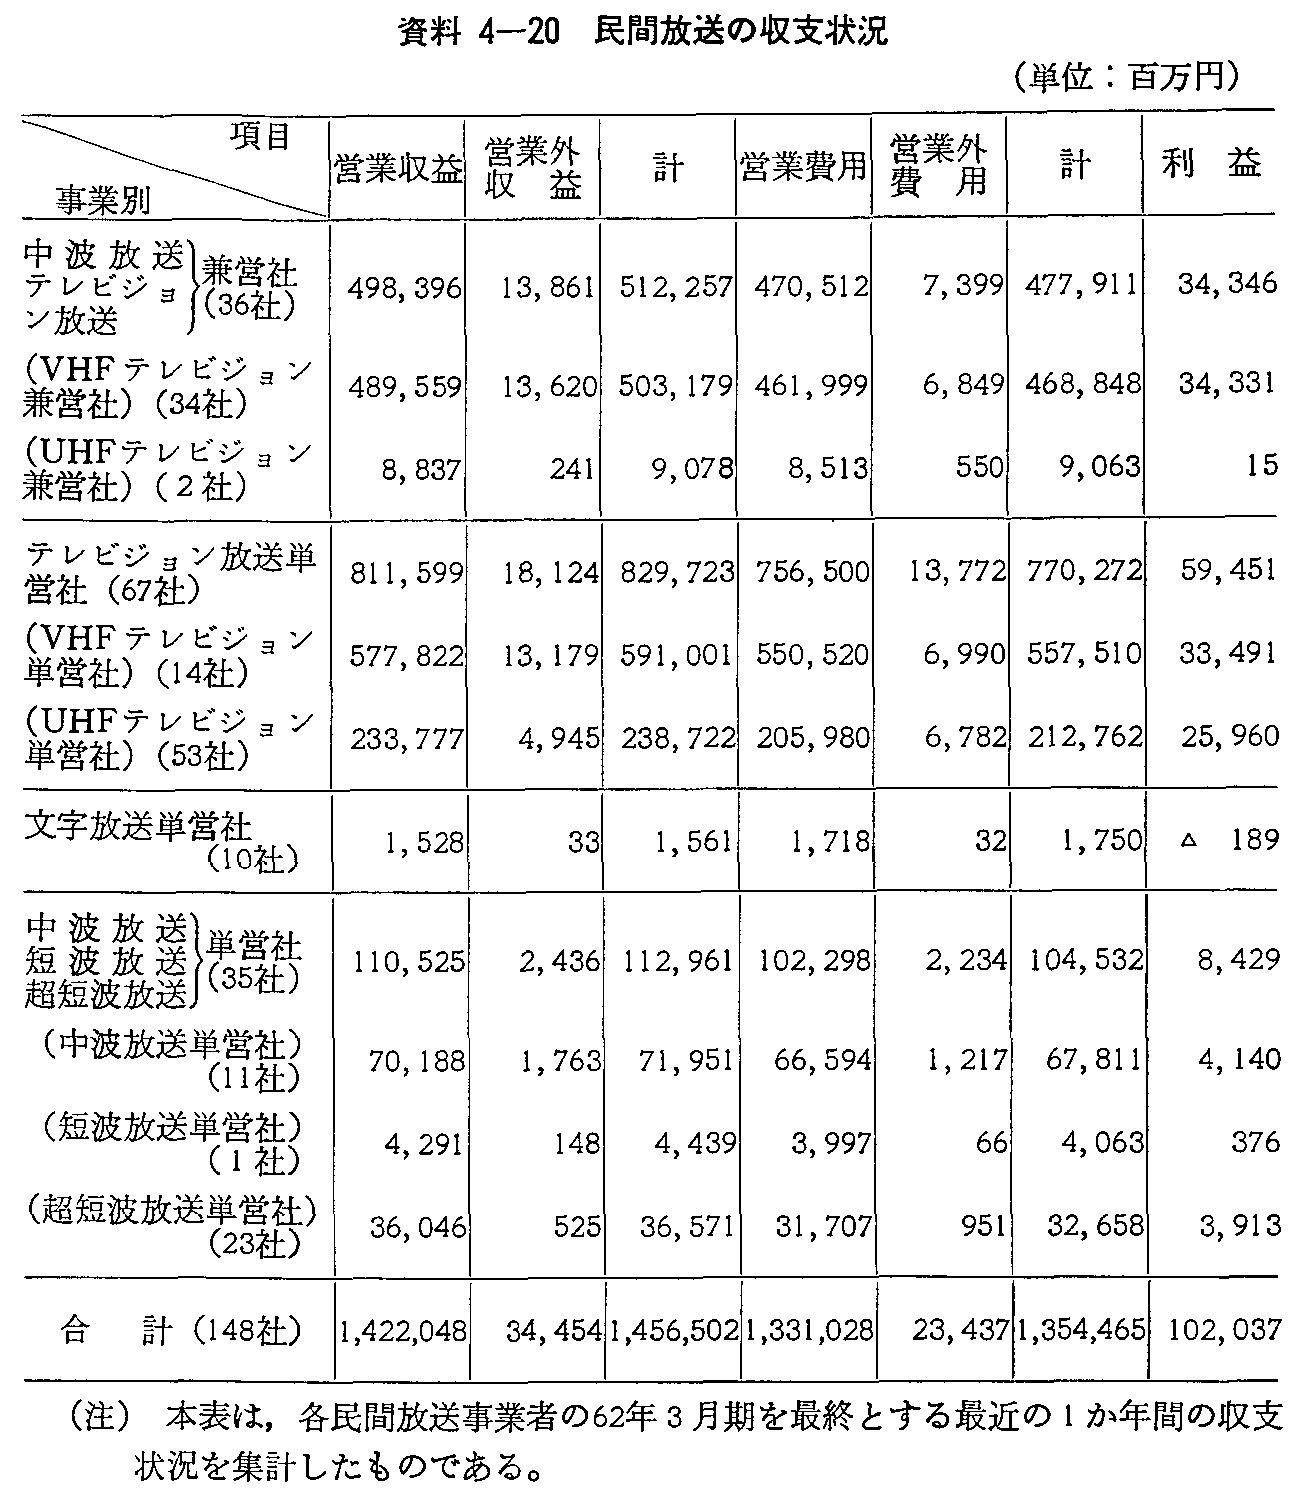 資料4-20 民間放送の収支状況